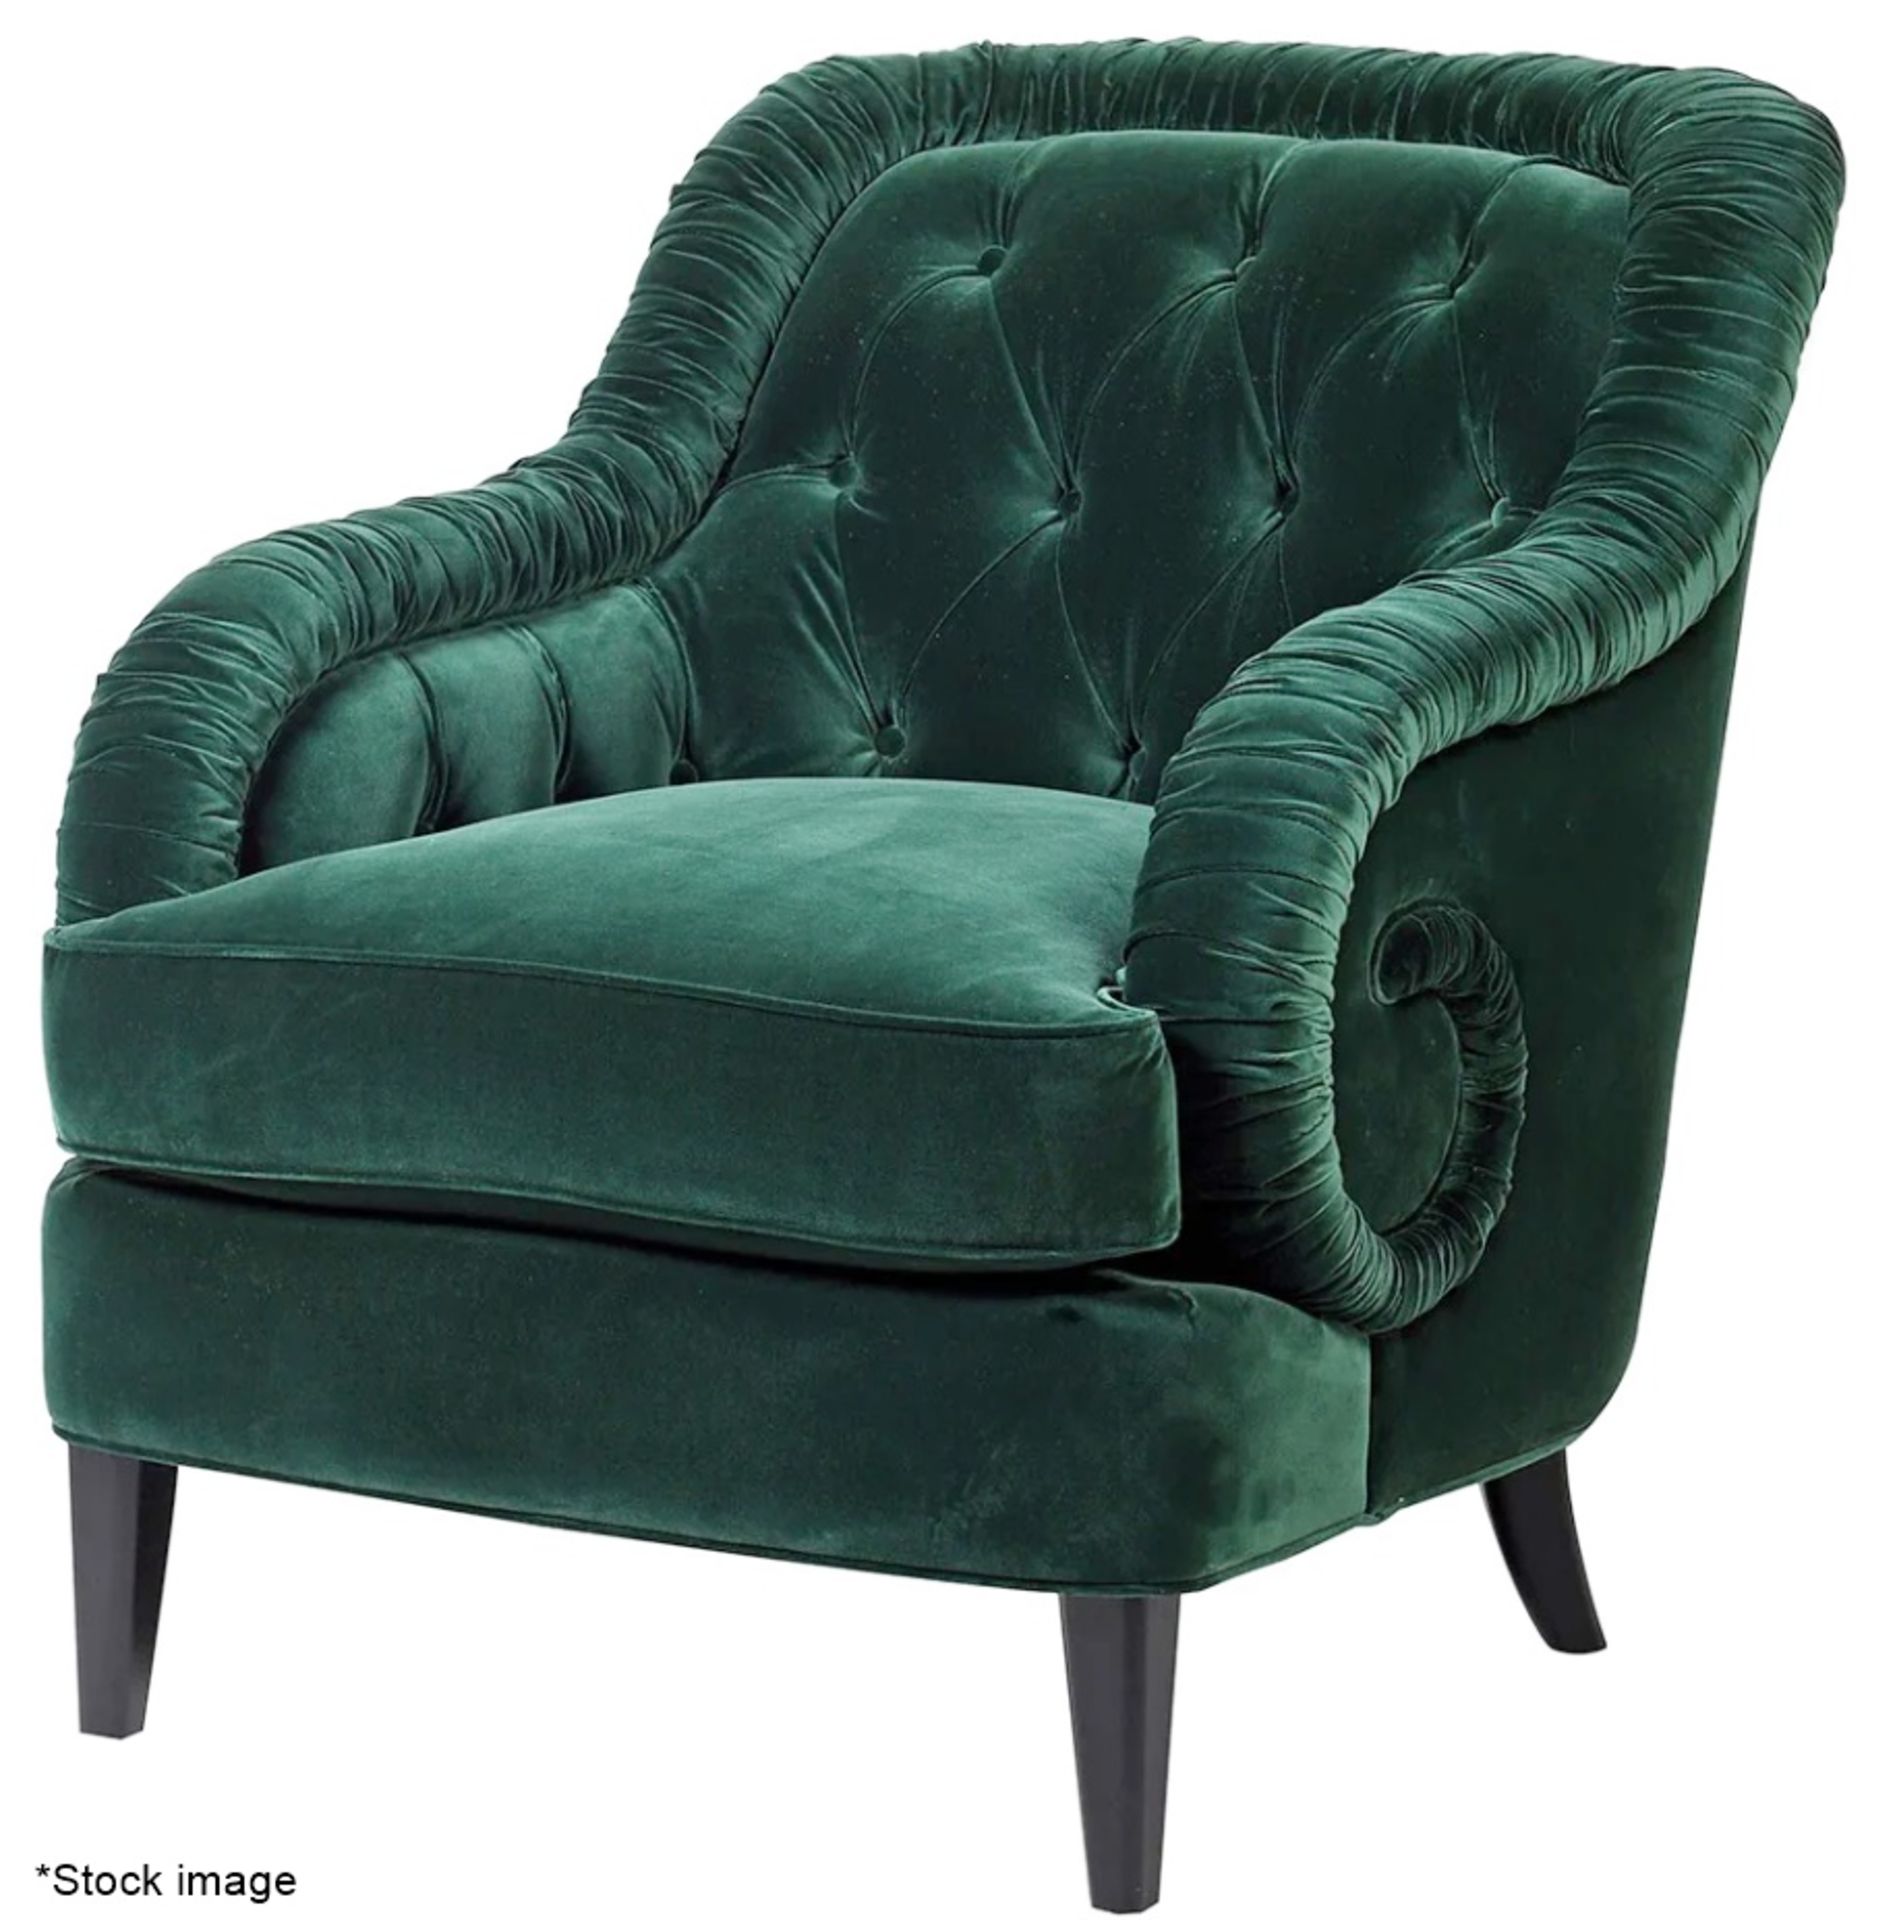 1 x Sumptuous Luxury Deep Green Velvet Upholstered Armchair - Original RRP £1,495